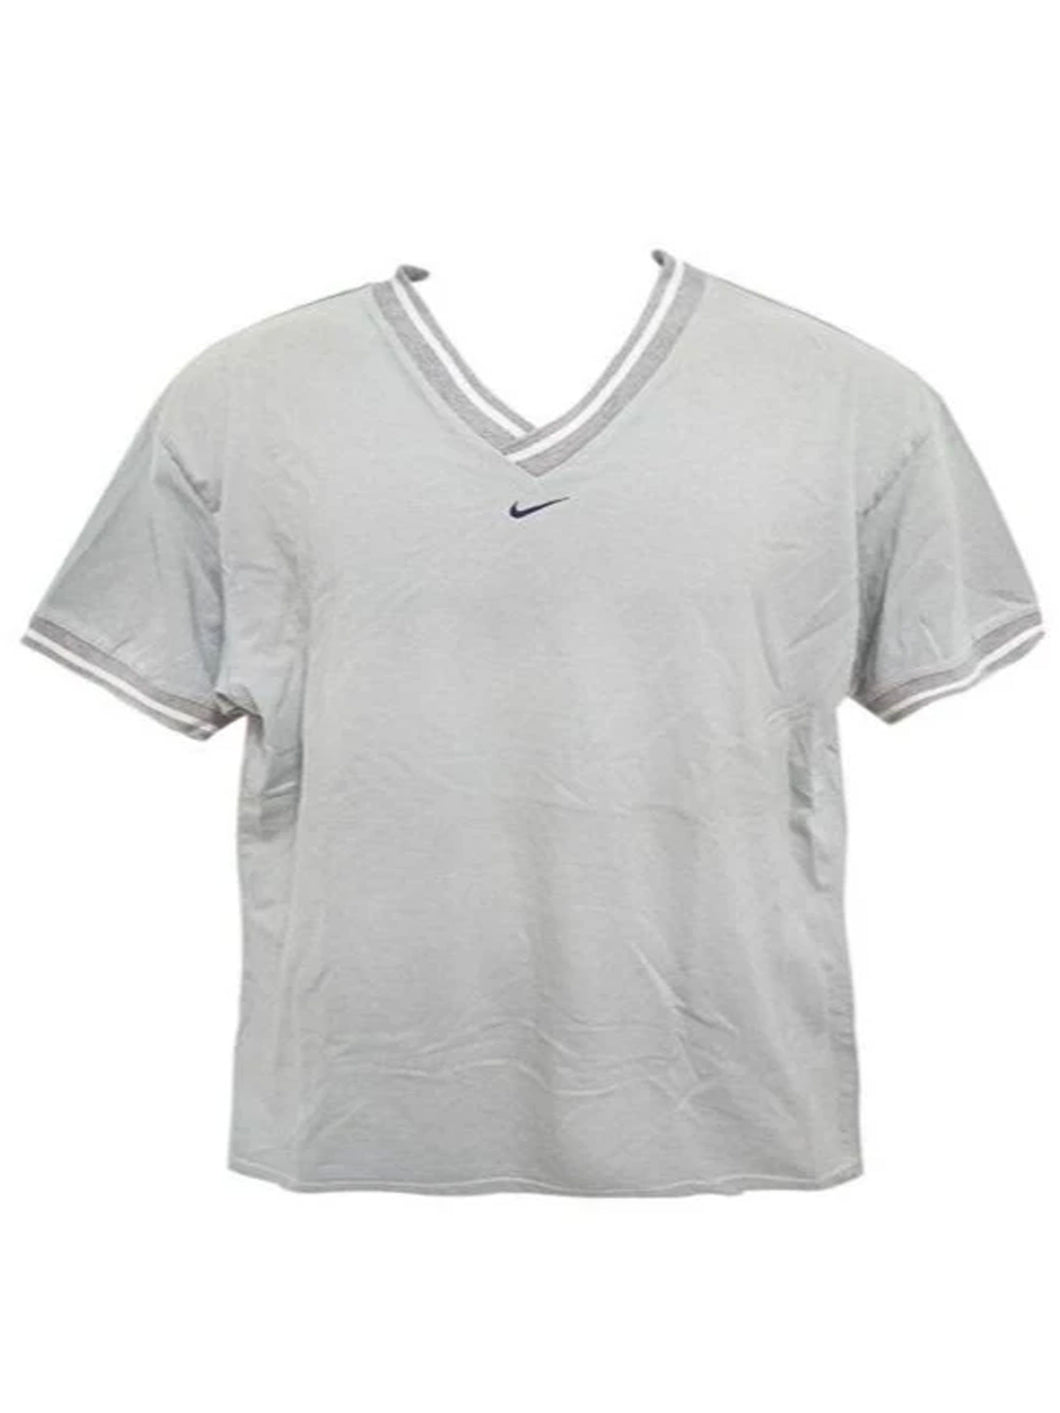 Nike Grey Sports V-Neck Shirt